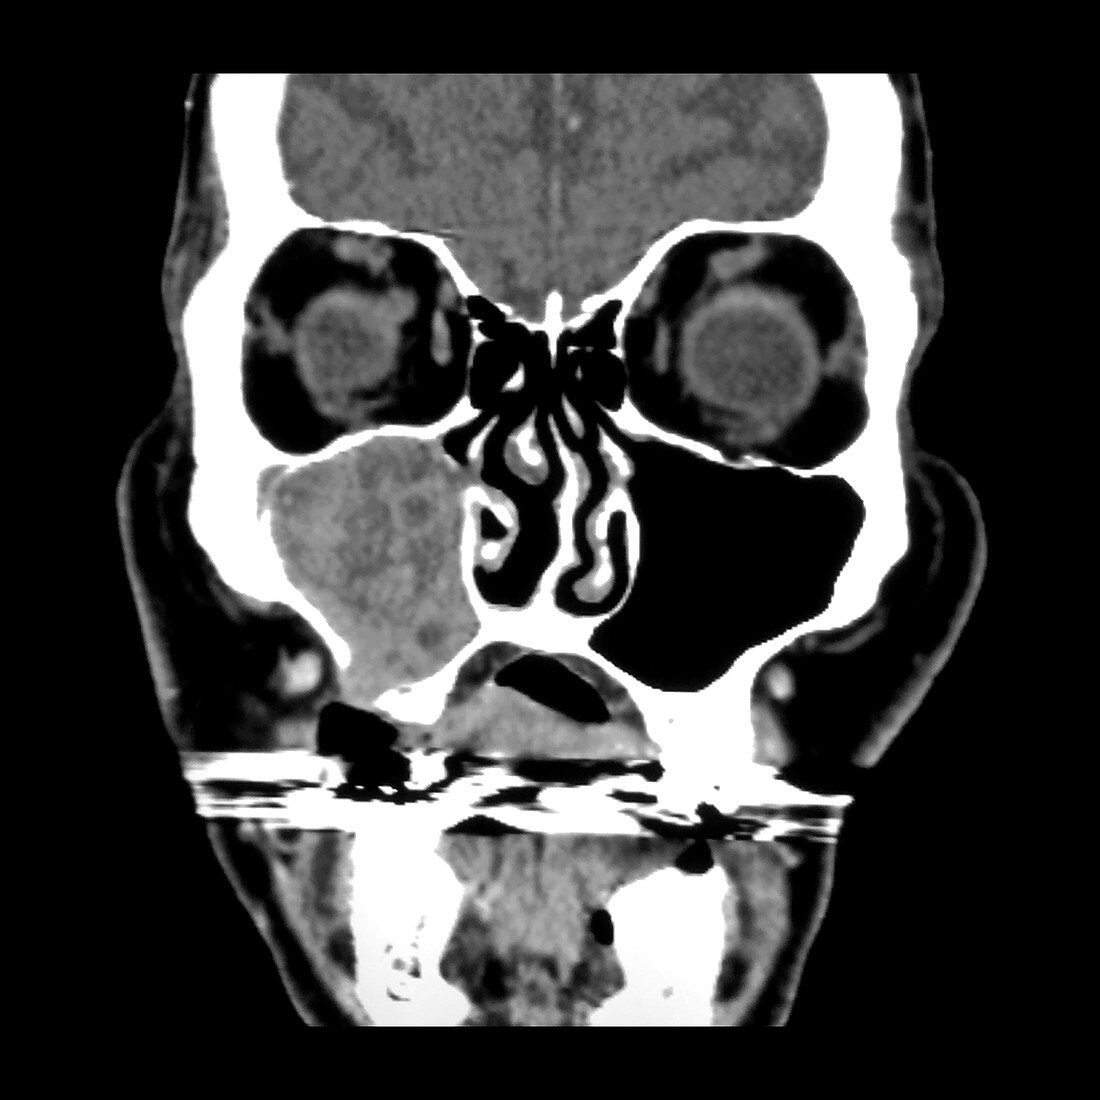 Ameloblastoma of Maxilla, CT